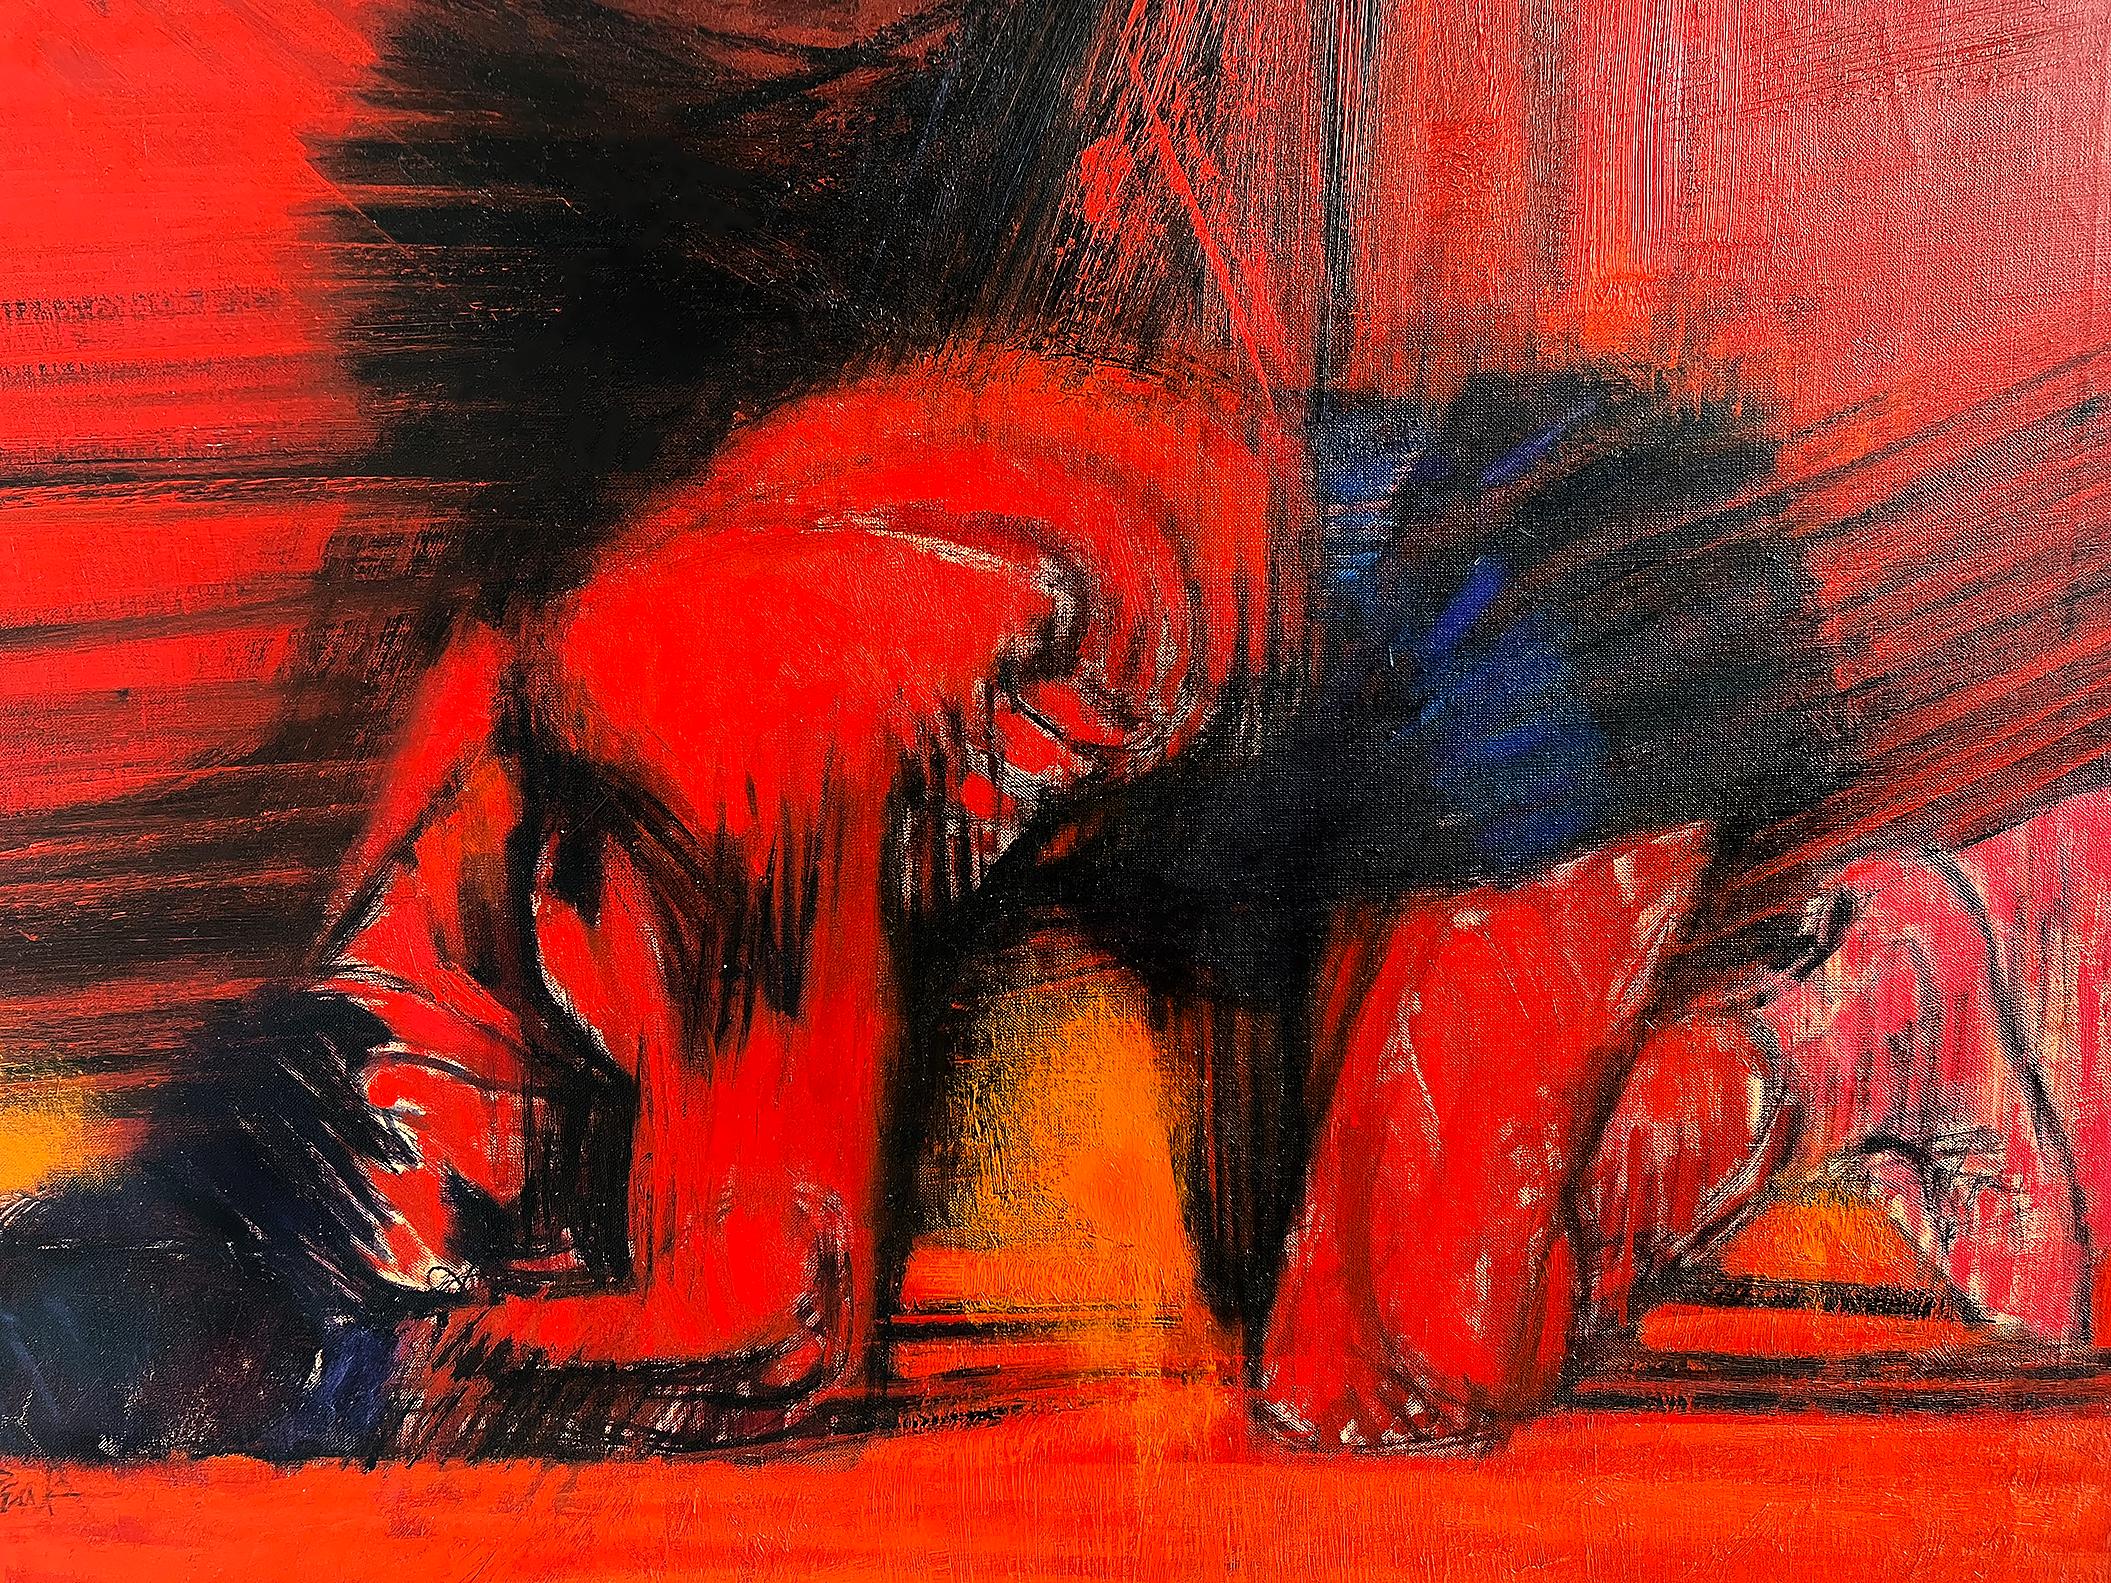 Boxring. Schachtelverpackt, bis zum Boden geknöpft mit 10 Zahlen, rot und schwarz,  Esquire Magazin (Rot), Portrait Painting, von Bob Peak